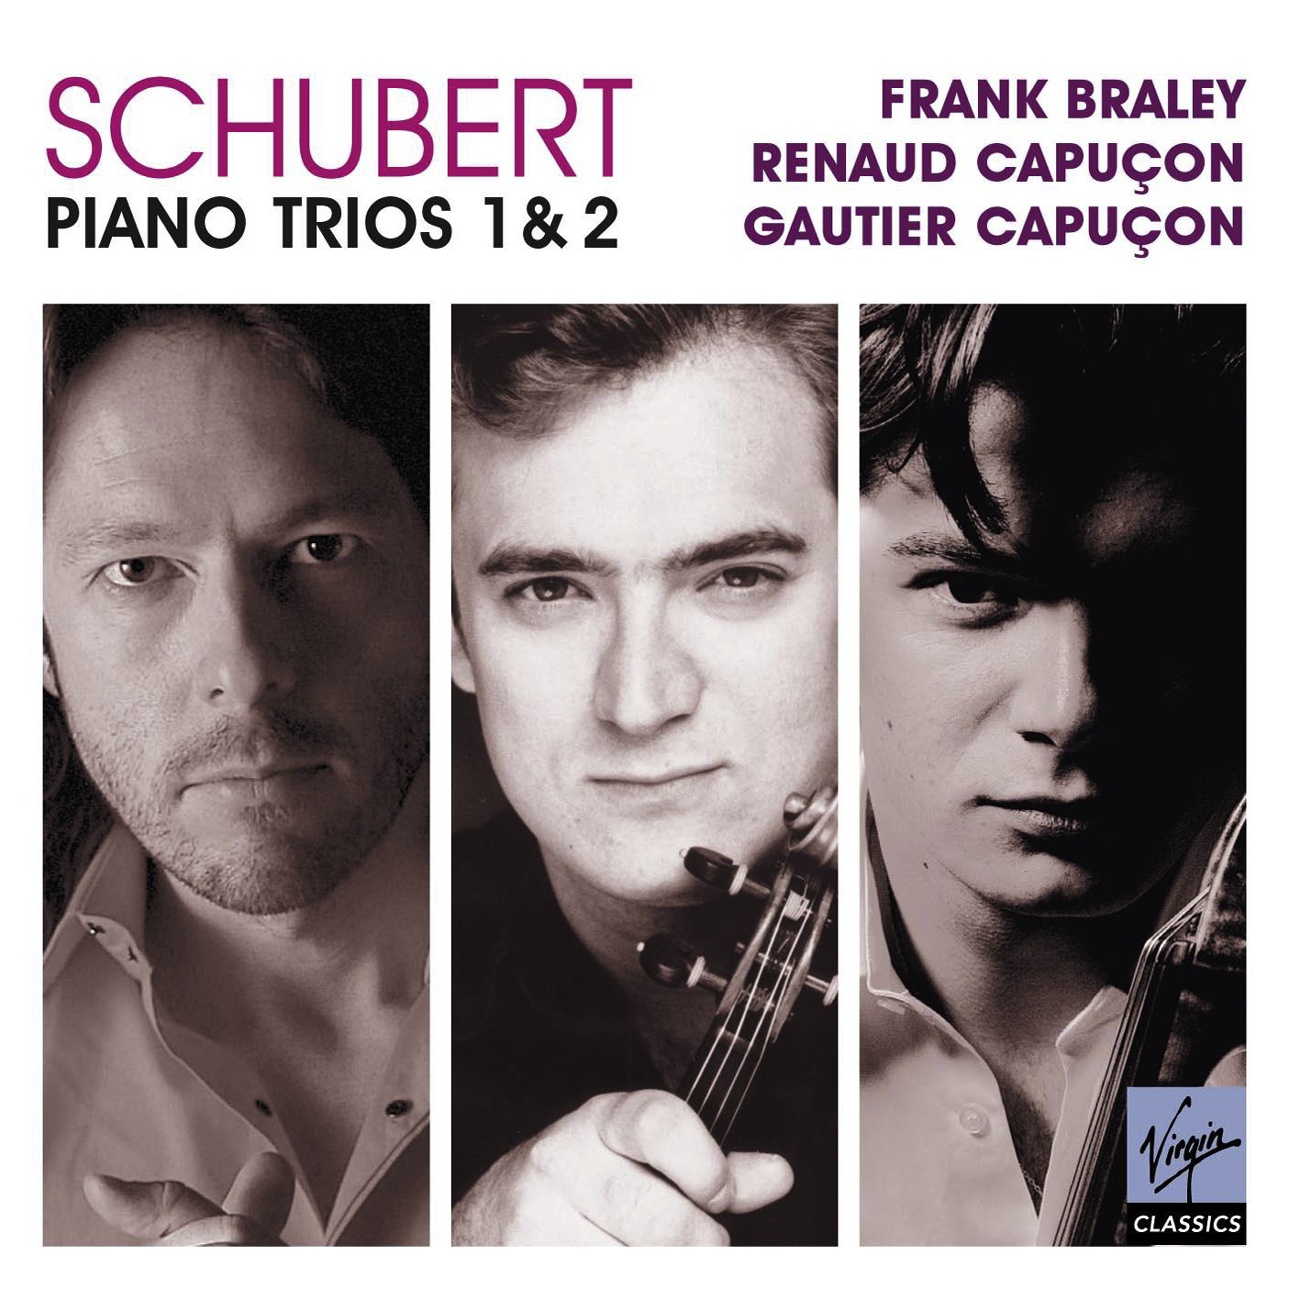 Piano Trio No. 2 in E flat major D.929: IV.    Allegro moderato